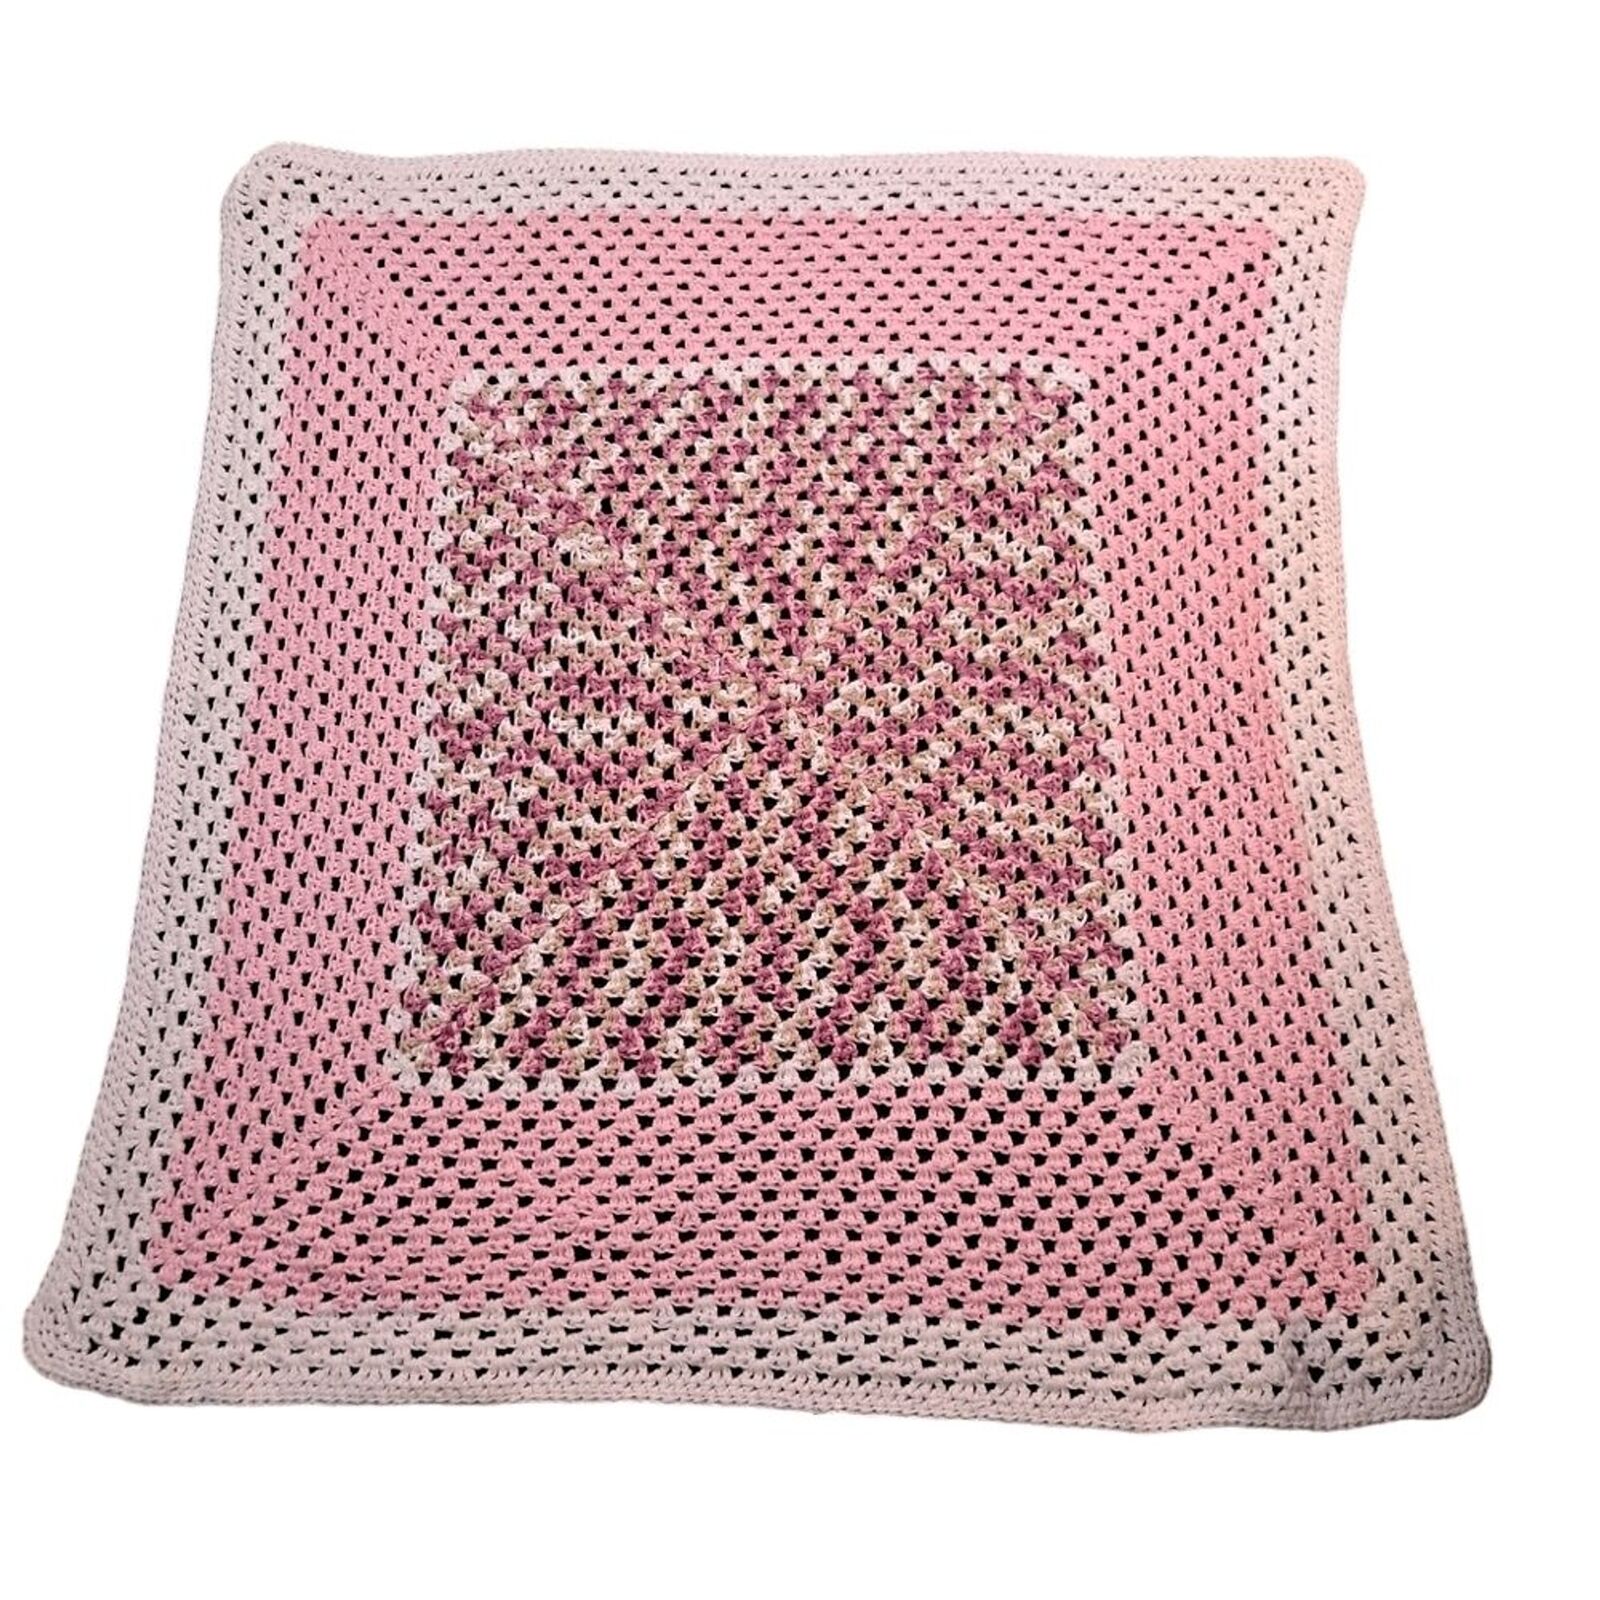 Vintage Handmade Pink Crochet Baby Blanket Afghan Crib